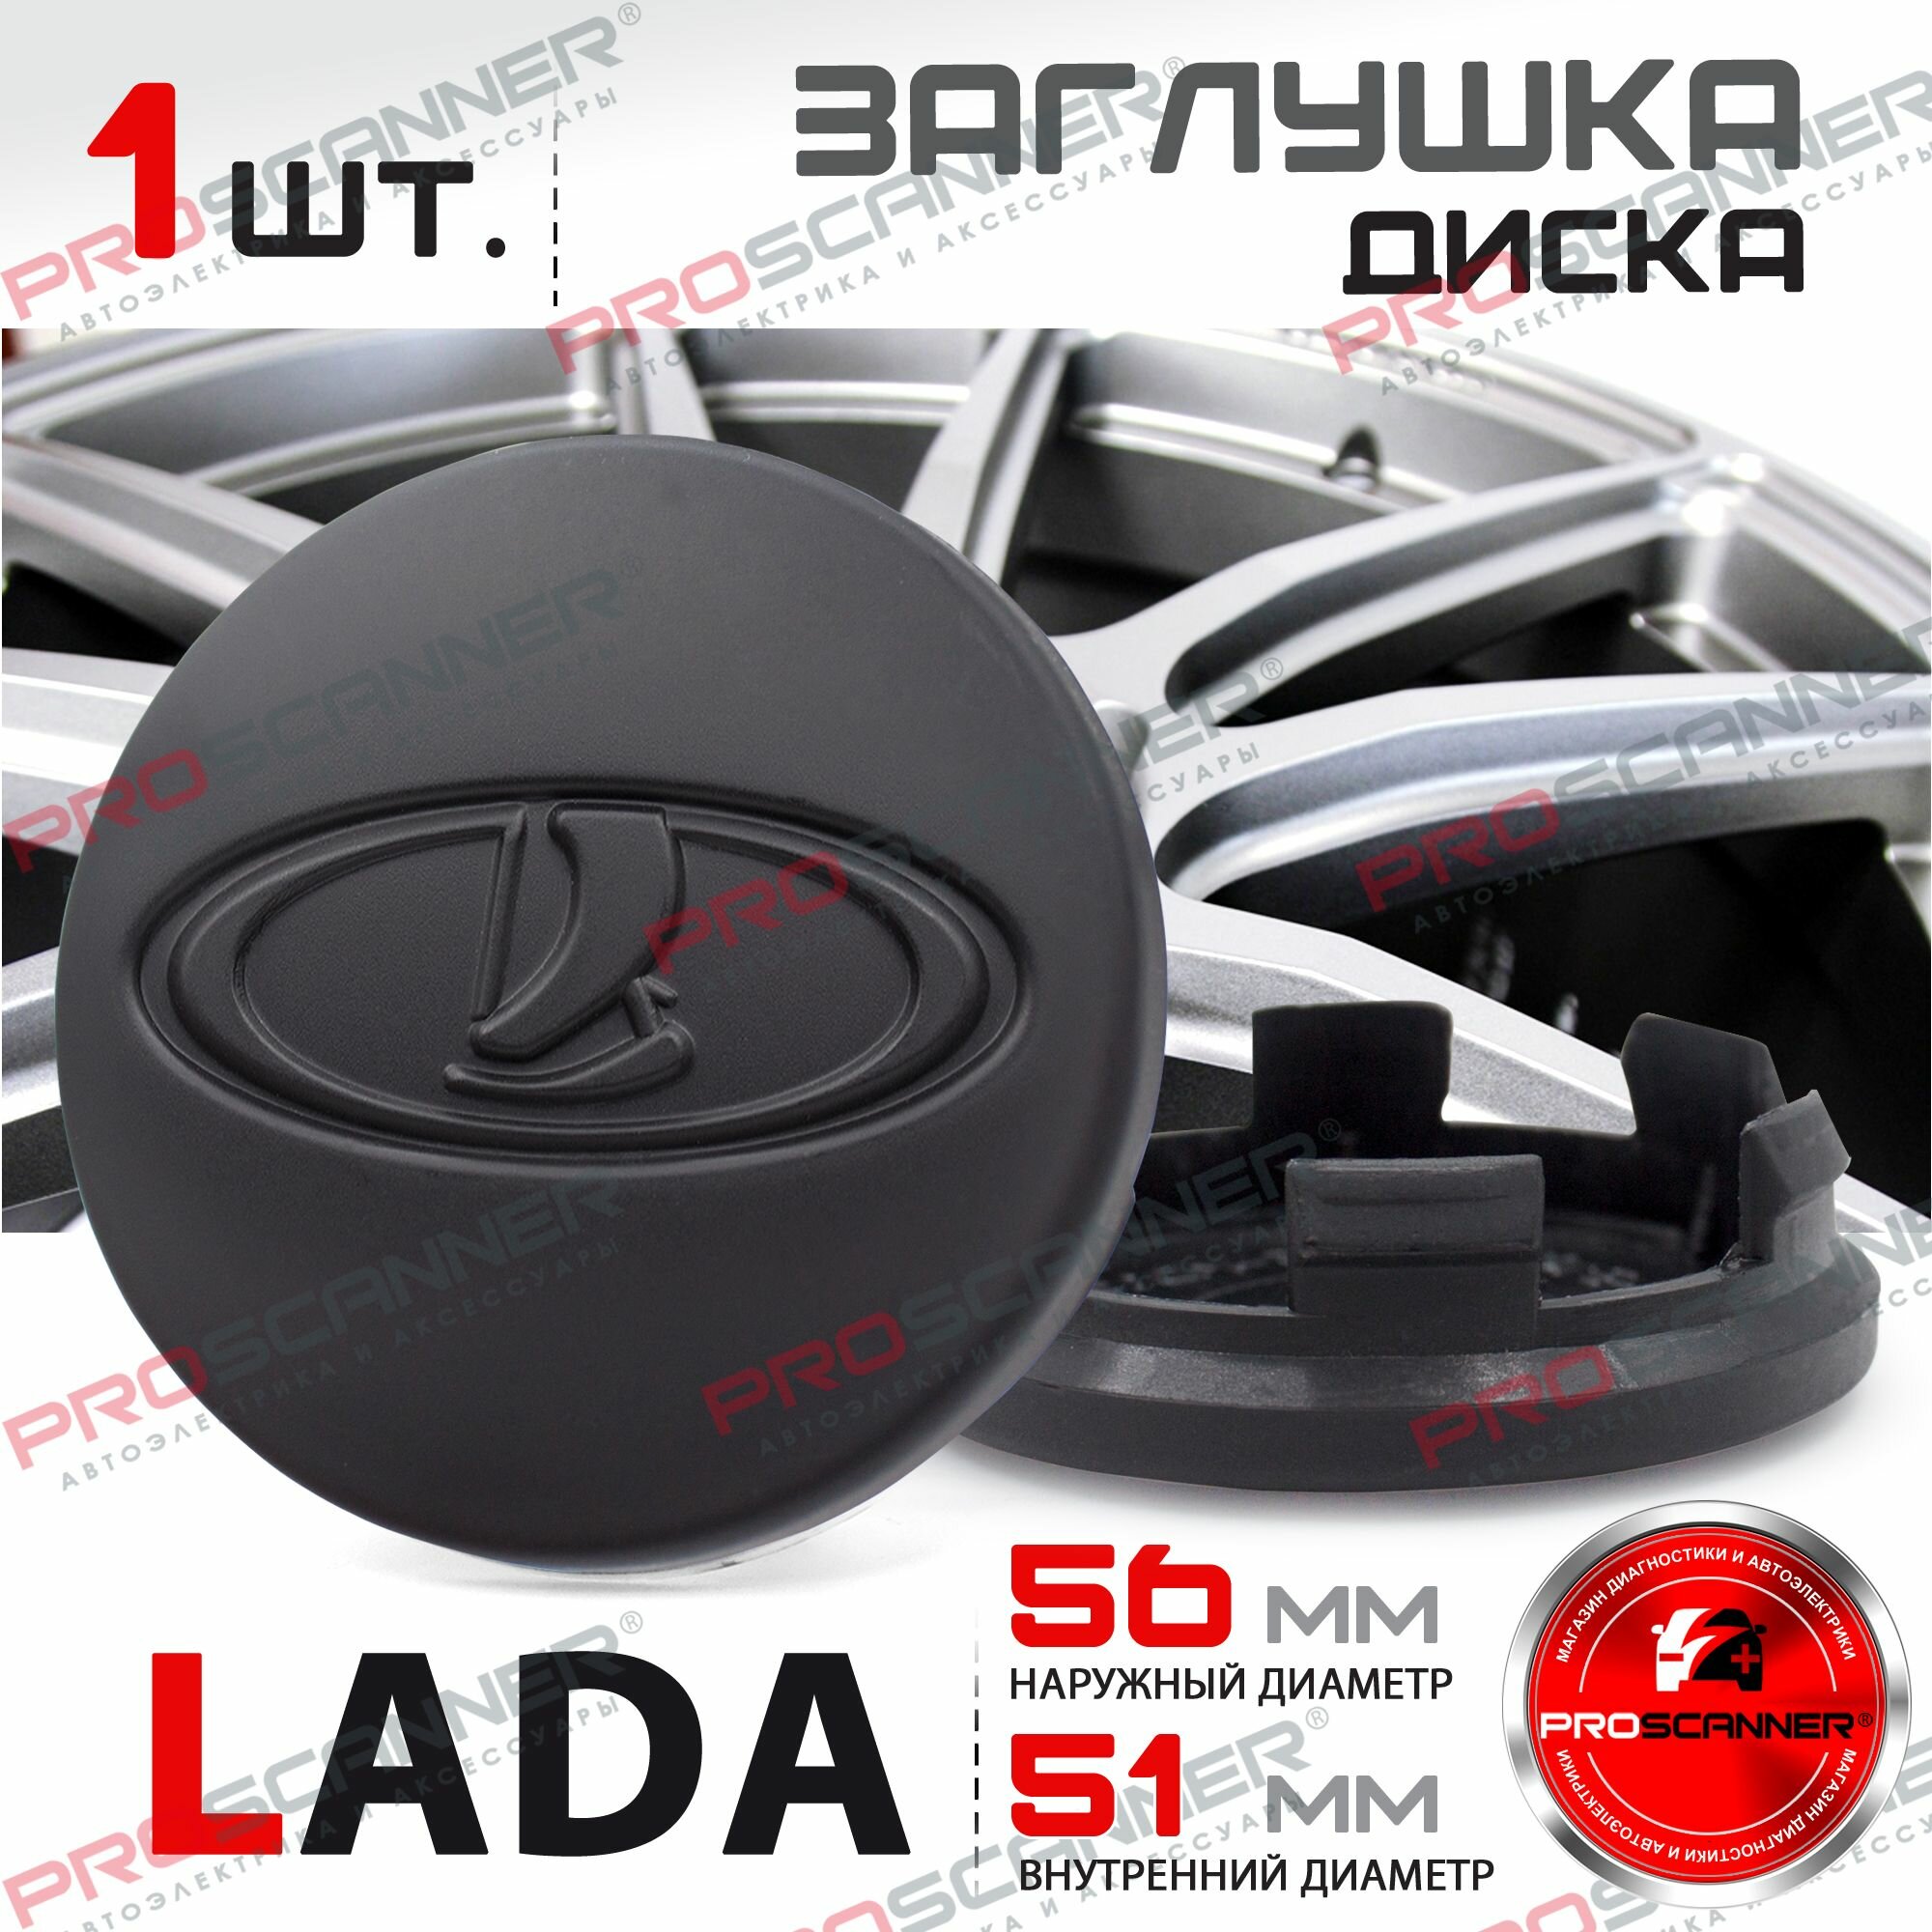 Колпачки заглушки на литые диски для Lada 56 мм 21723101014 - 1 штука черный